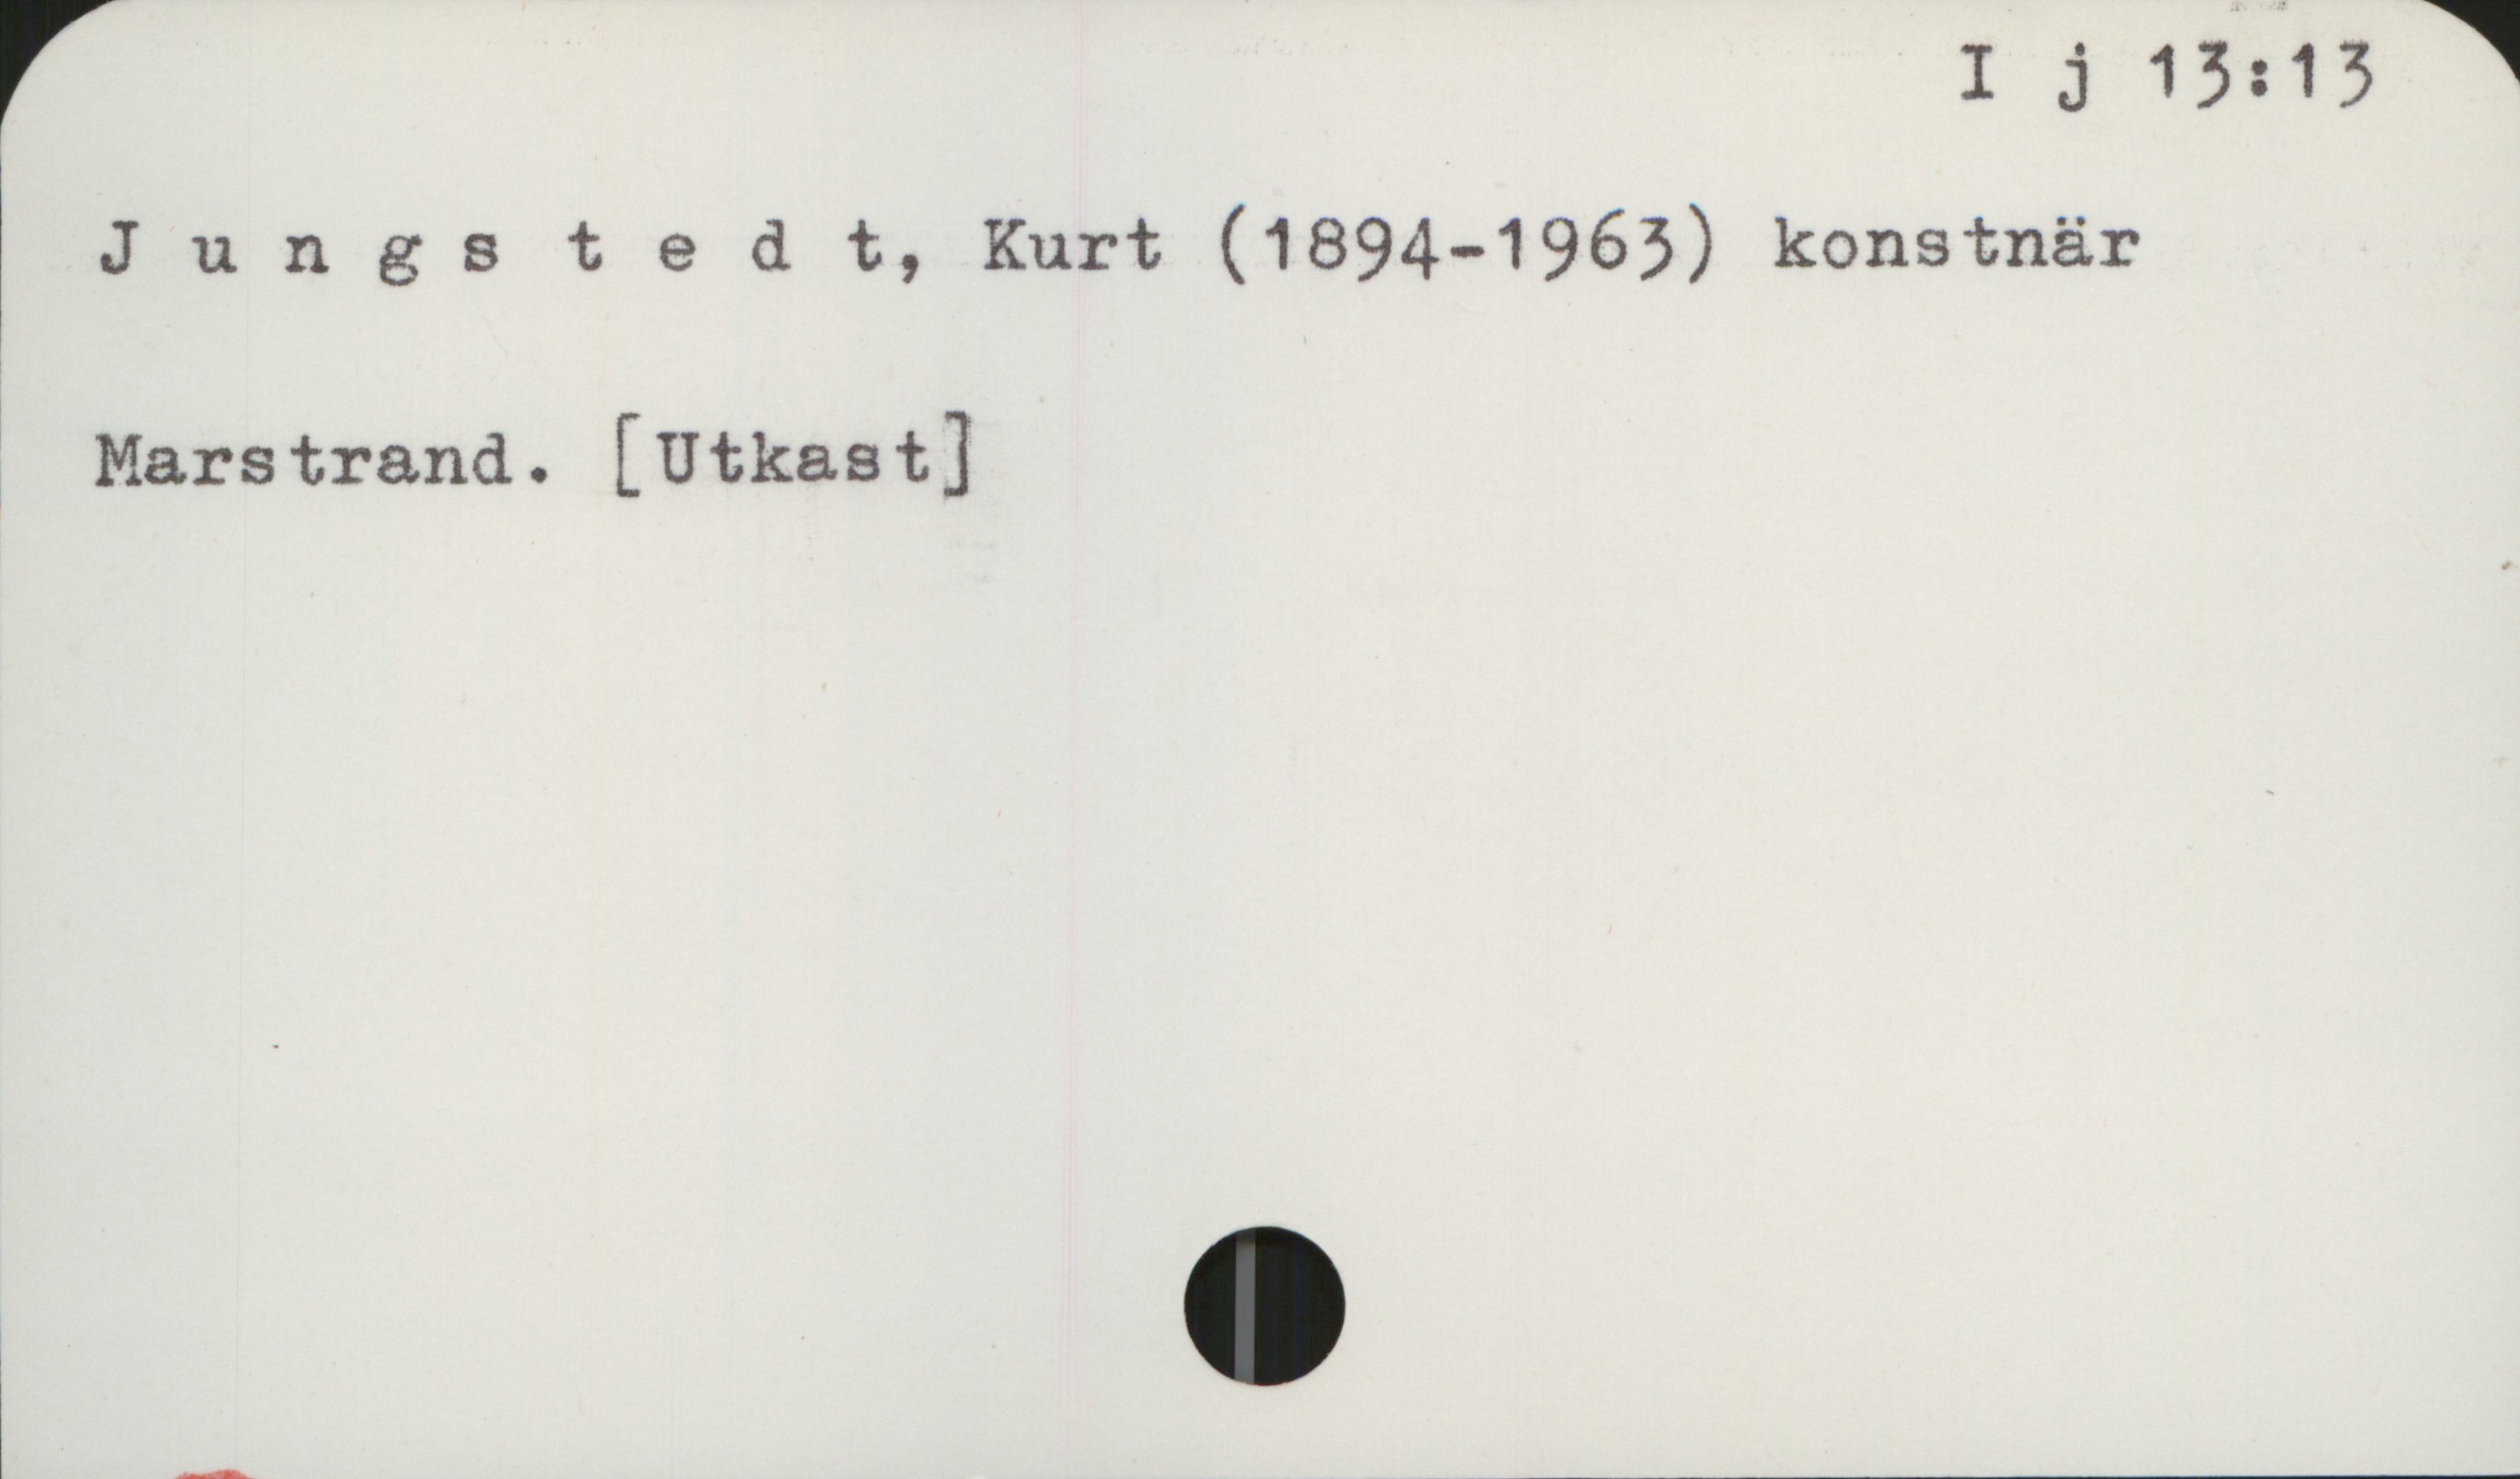 Jungstedt, Kurt (1894-1963) I j 13: 13

Jungstedt, Kurt (1894-1963) konstnär

Marstrand. [Utkast]